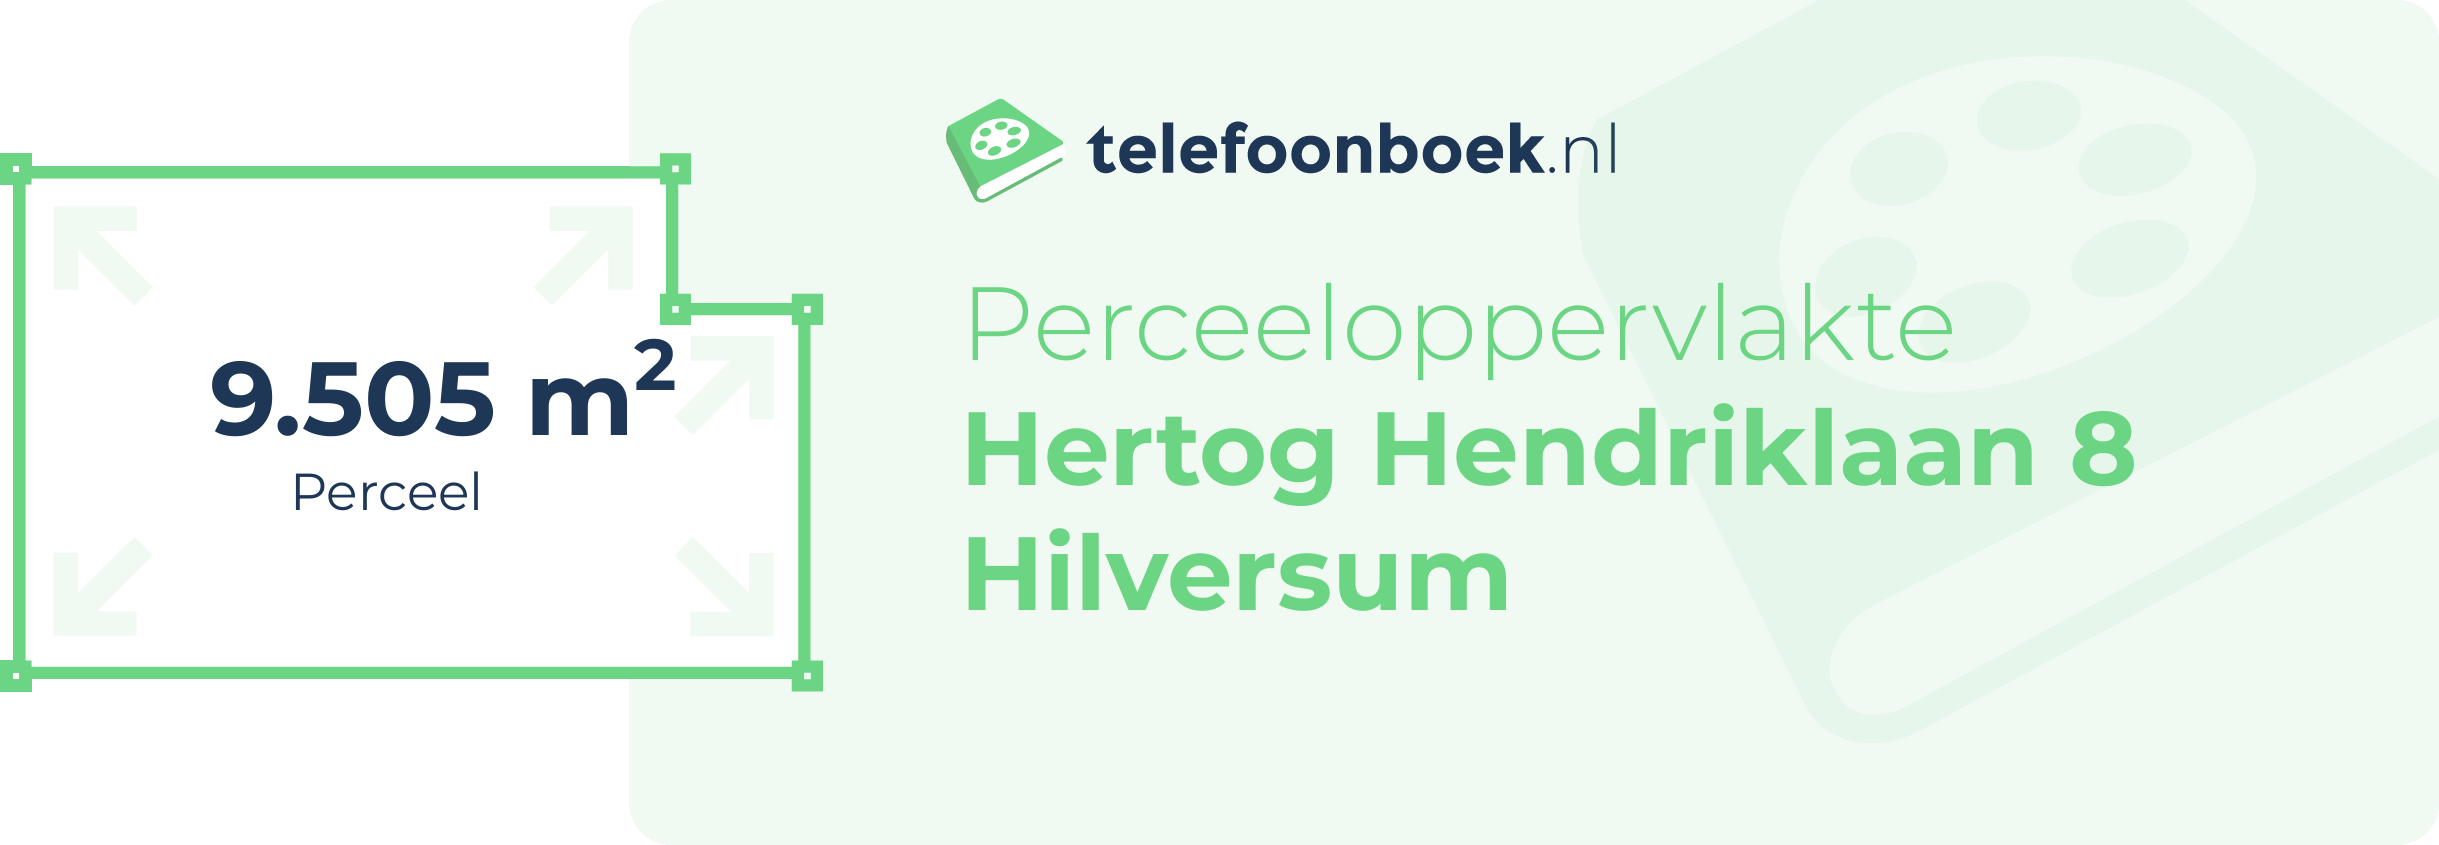 Perceeloppervlakte Hertog Hendriklaan 8 Hilversum